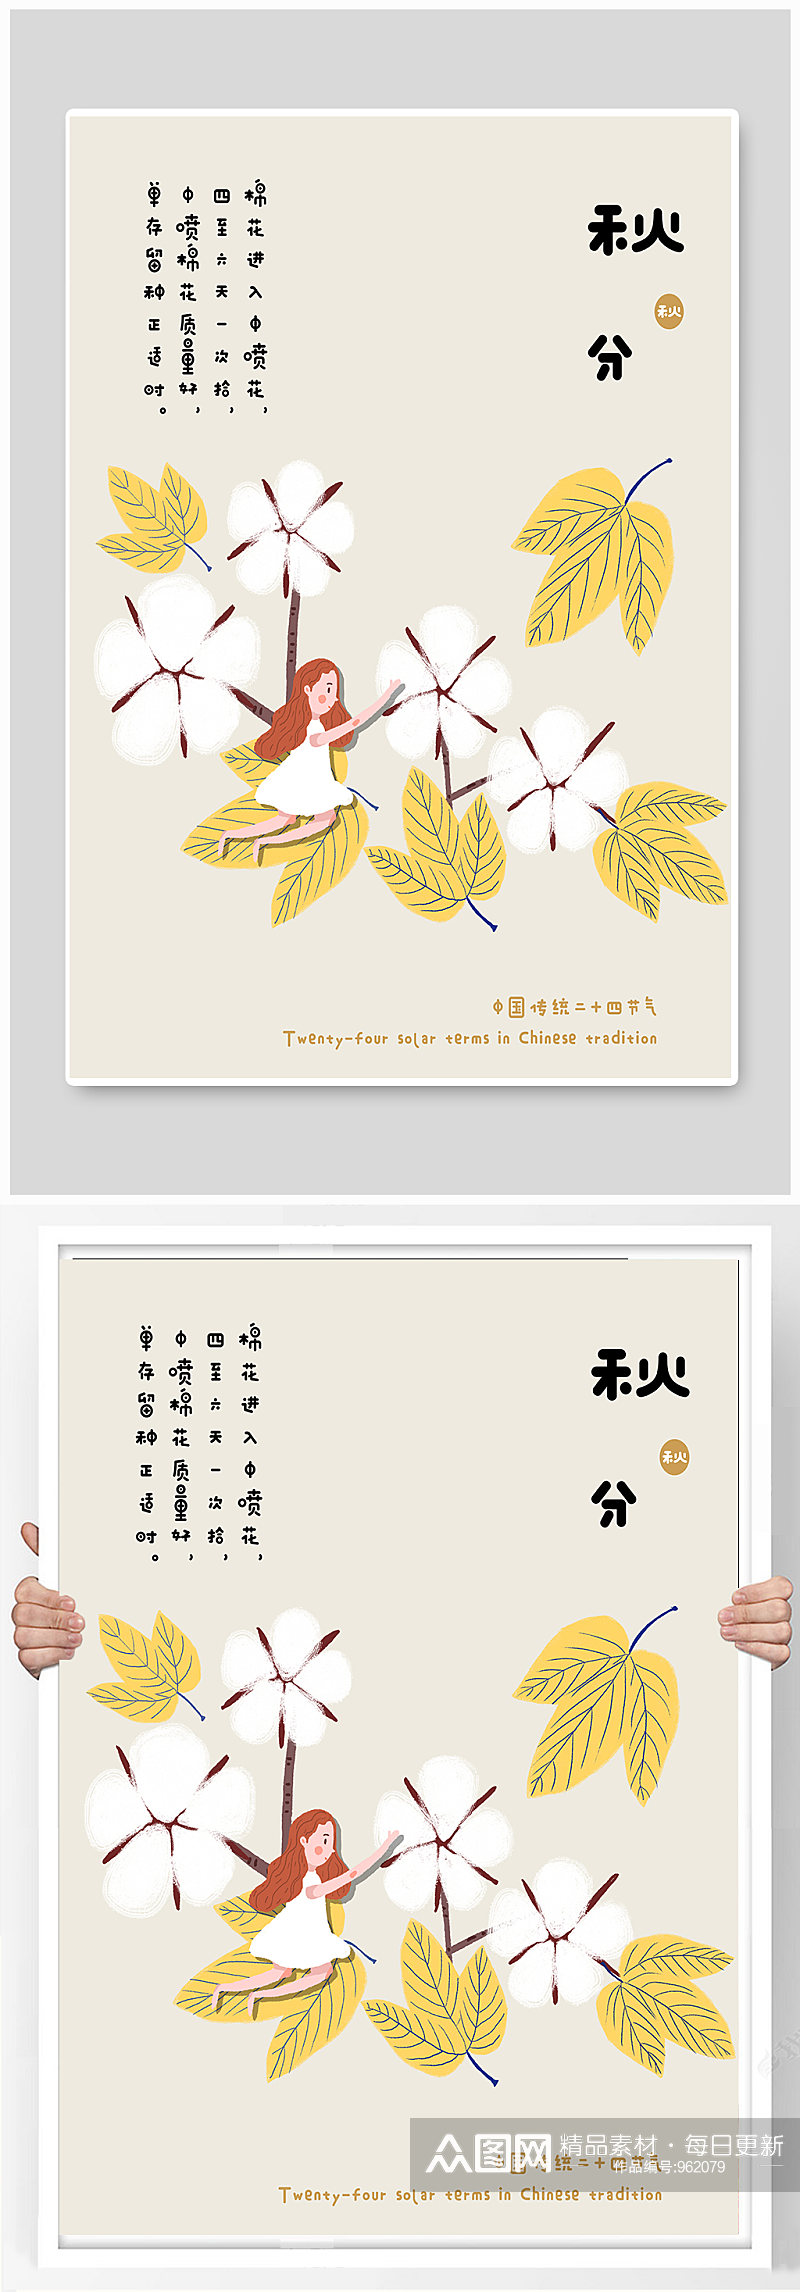 中国传统二十四节气秋分可爱插画风素材